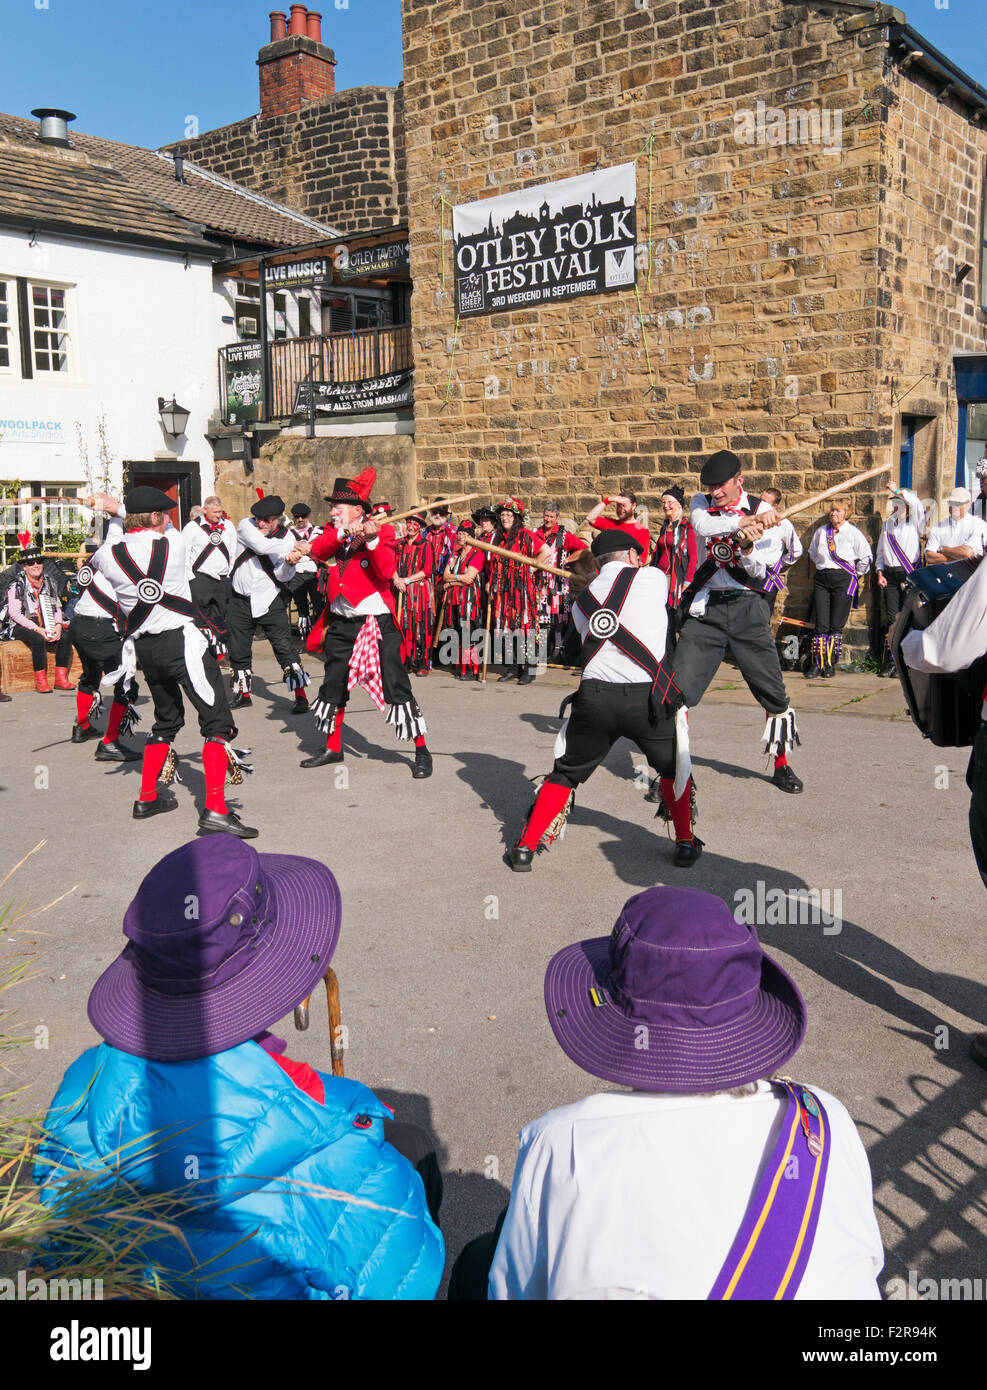 Groupe de danse Morris Grand Yorkshire Morris effectuer à Otley Folk Festival 2015, West Yorkshire, England, UK Banque D'Images